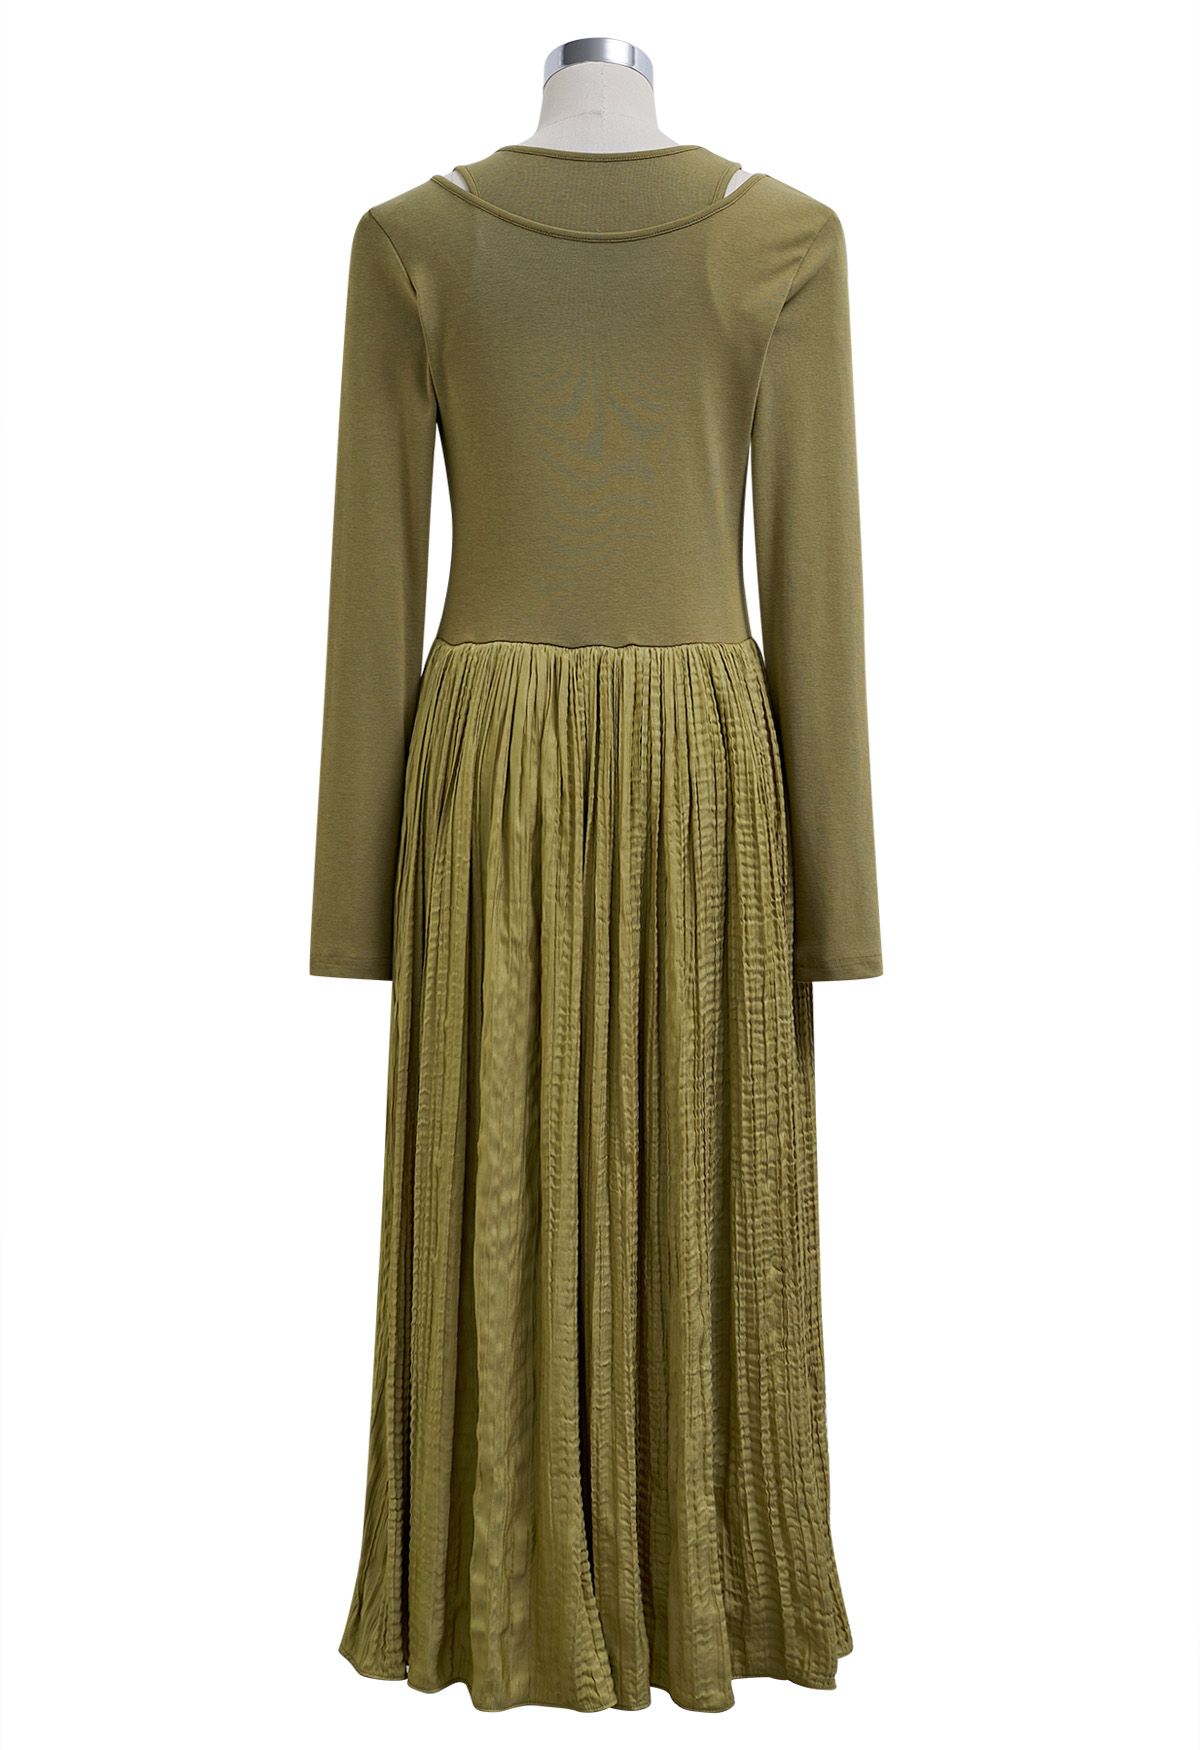 فستان متوسط الطول مقسم من قطعتين باللون الأخضر الطحلب